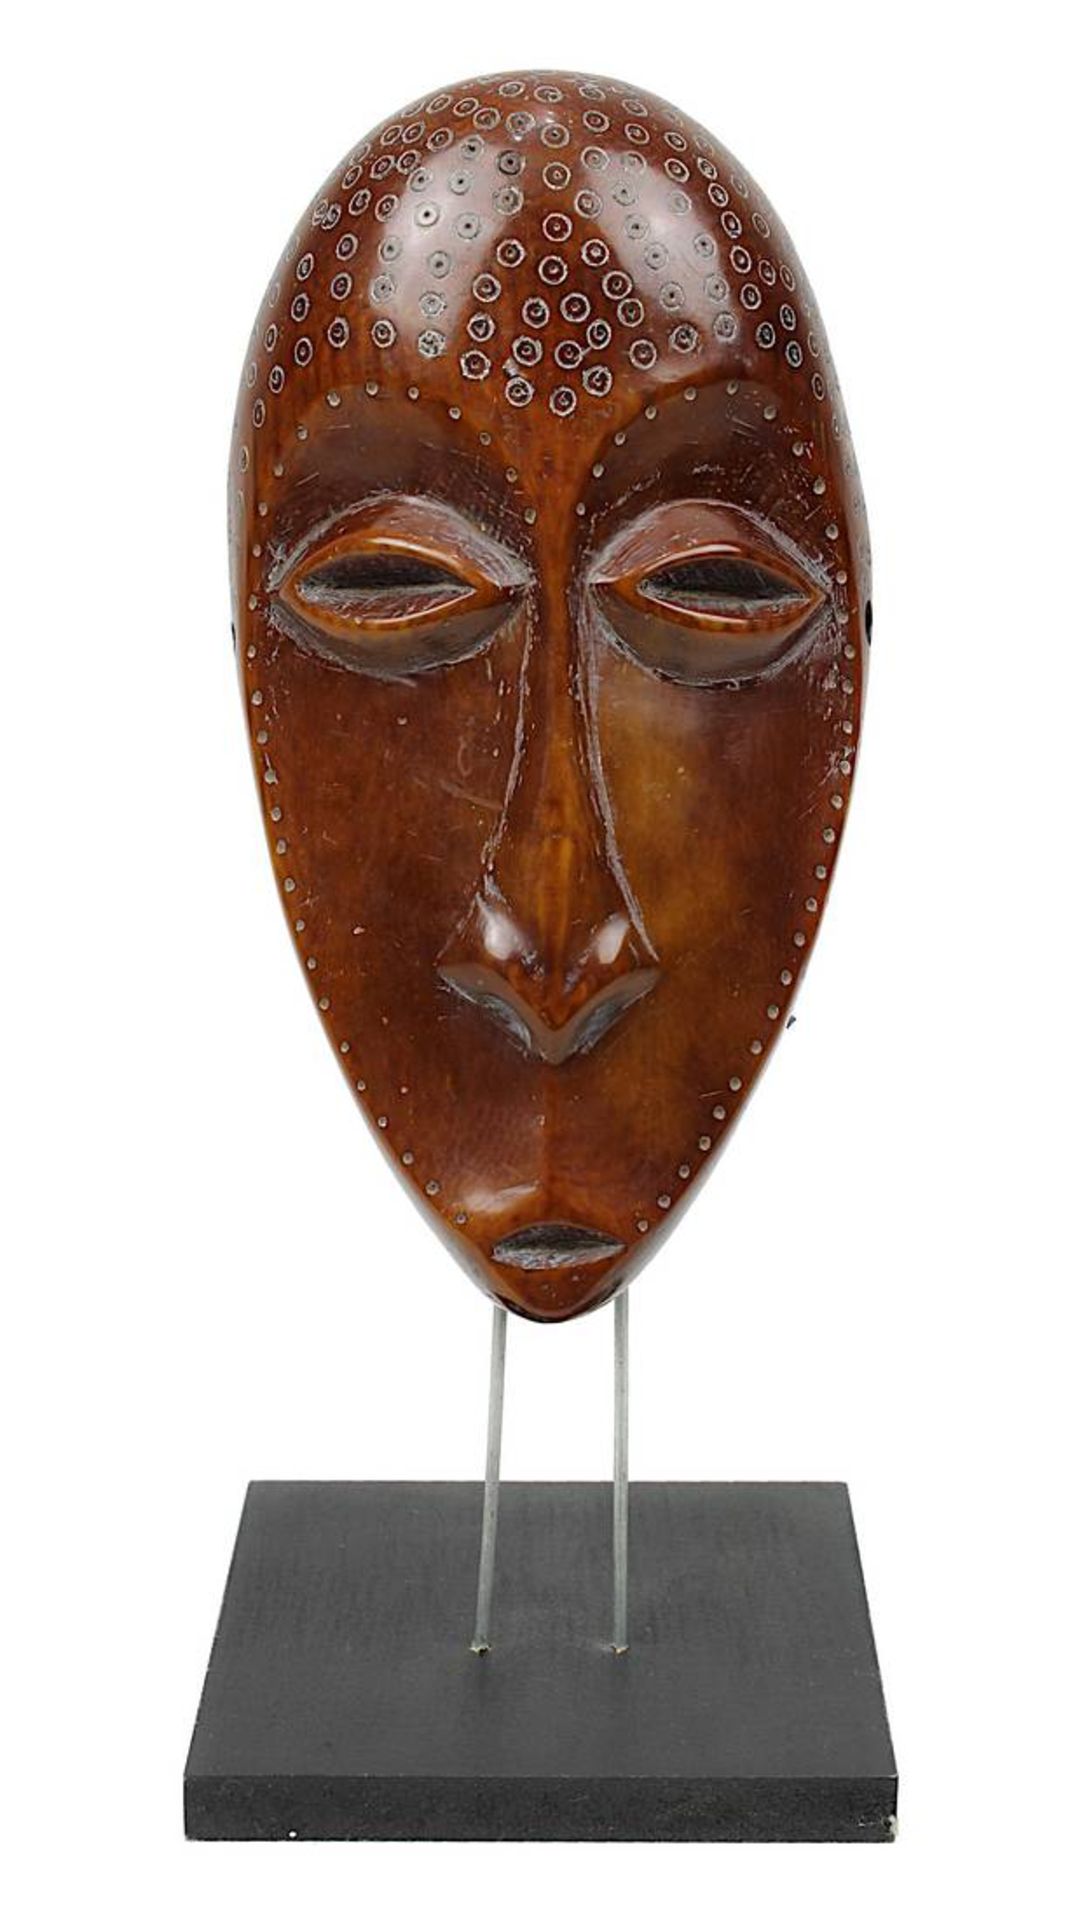 Maske lukungu der Lega, DR Kongo, Elfenbein dunkel-honigfarben patiniert, um 1900, Stirn mit den